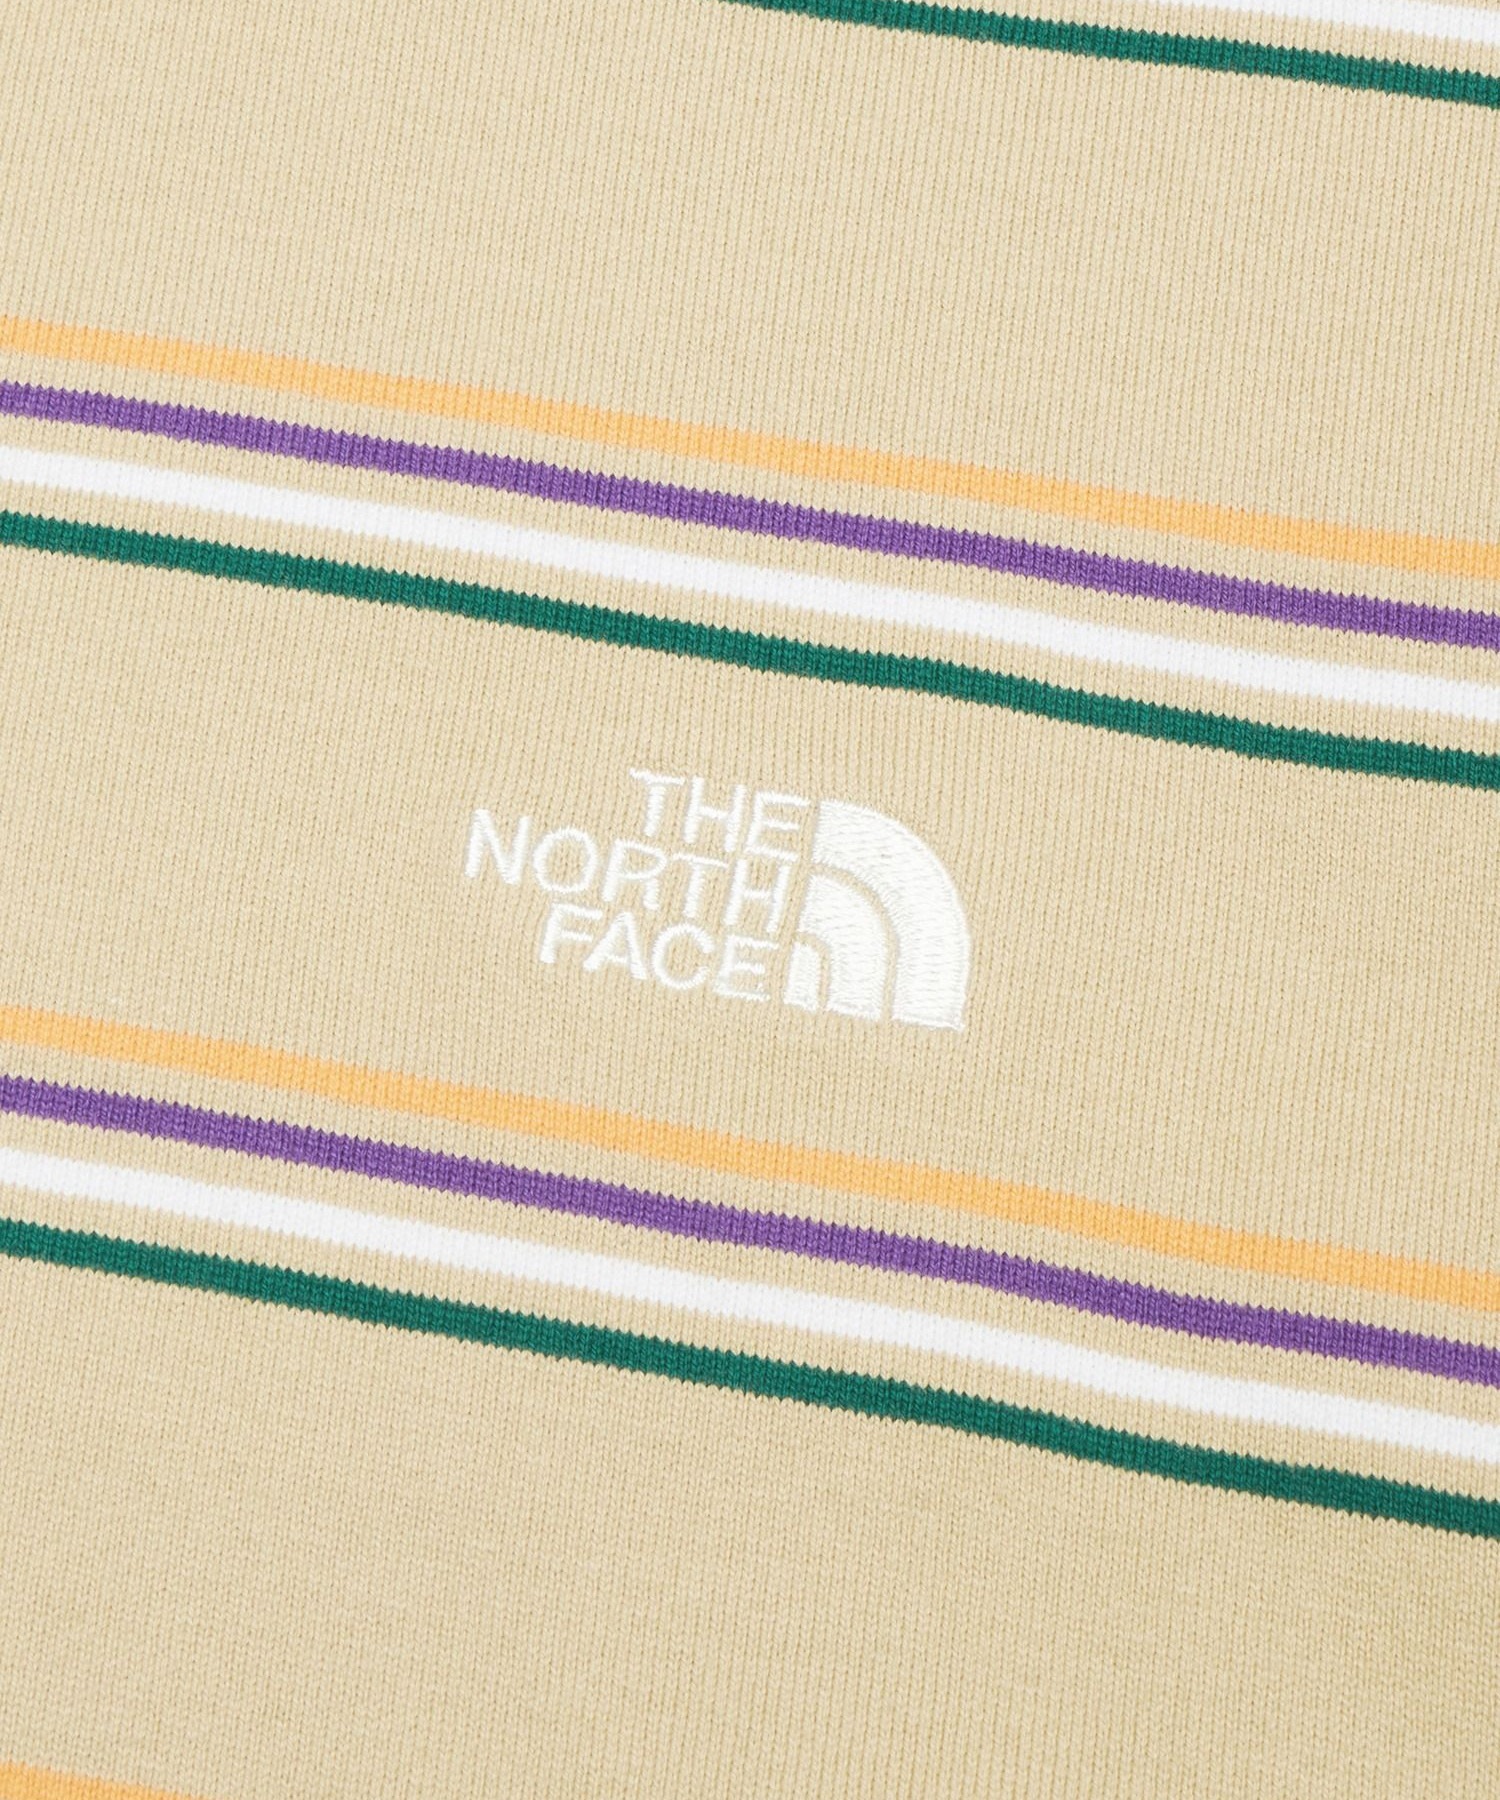 THE NORTH FACE ザ・ノース・フェイス メンズ Tシャツ 半袖 ショートスリーブマルチボーダーティー UVカット NT32455 GT(GT-M)